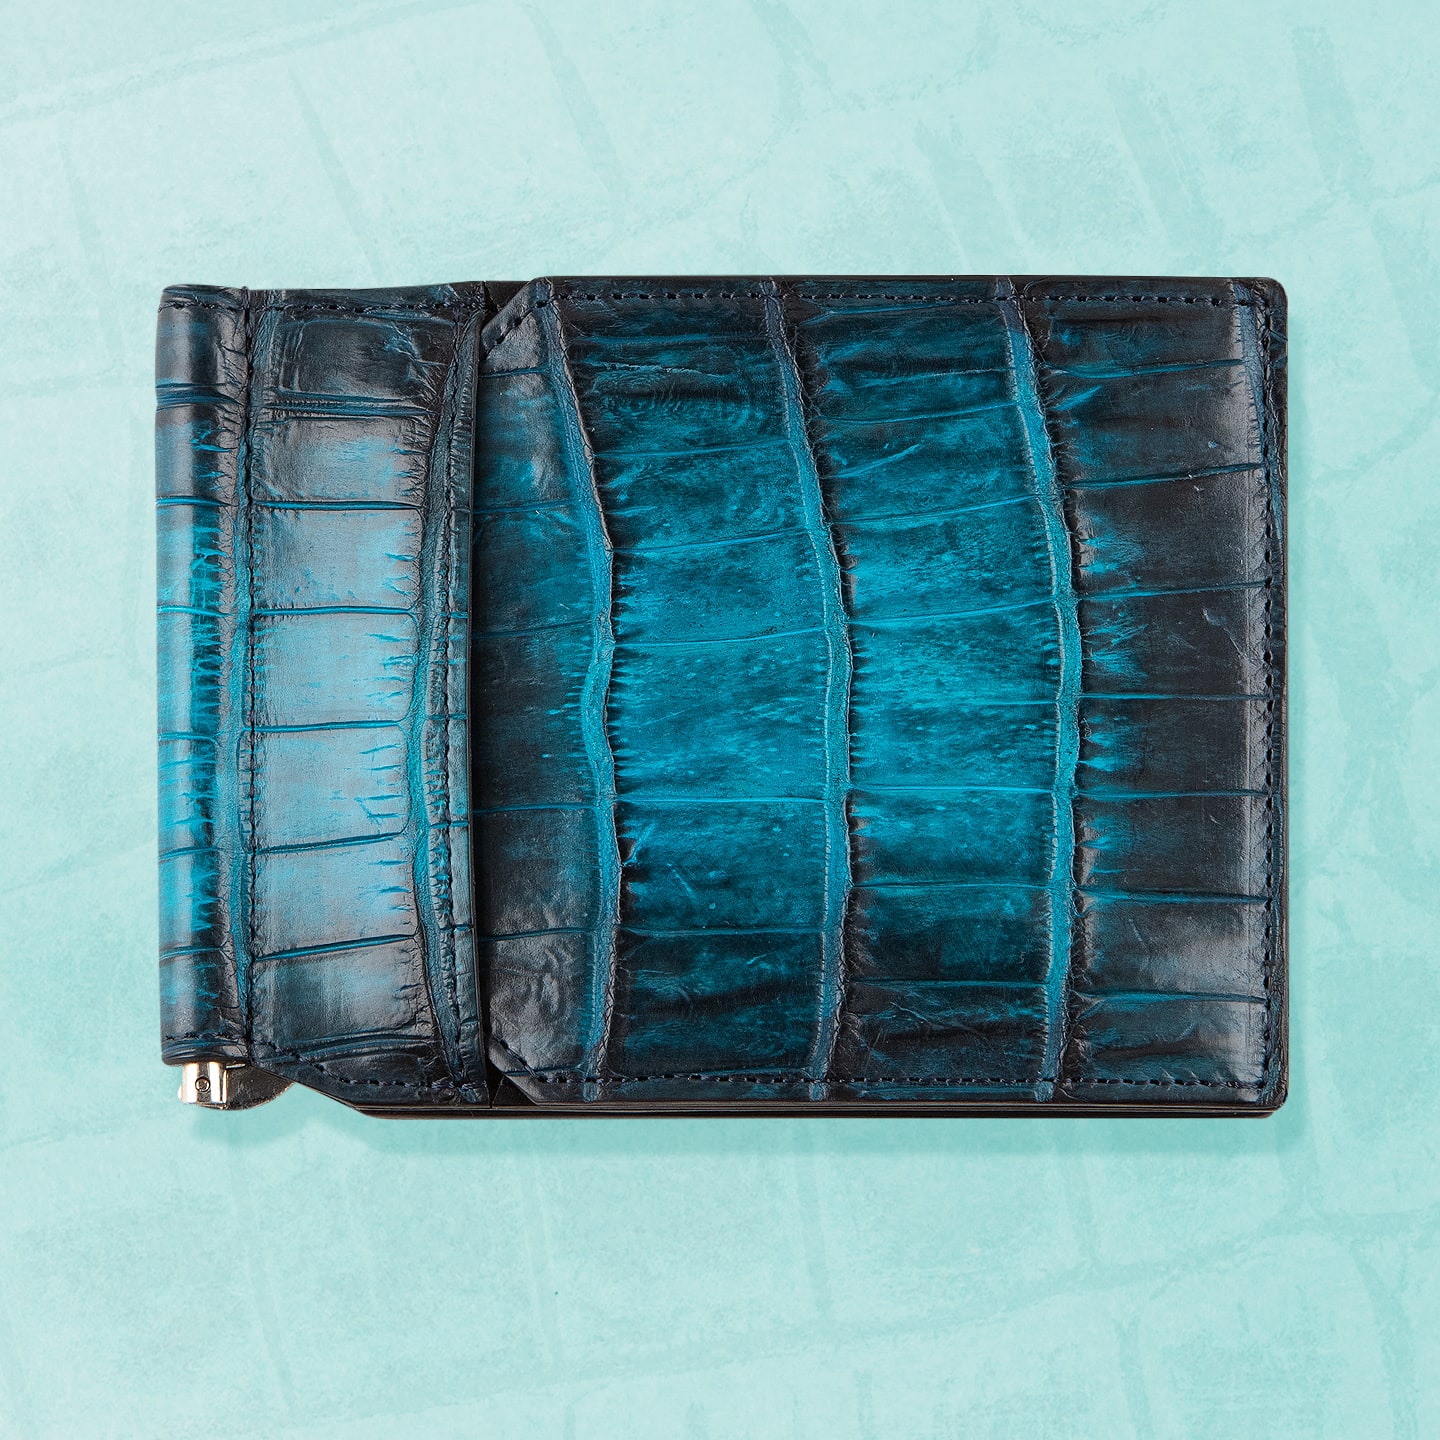 ナイルクロコダイル 手染めマネークリップ | 大人のバッグ・財布 